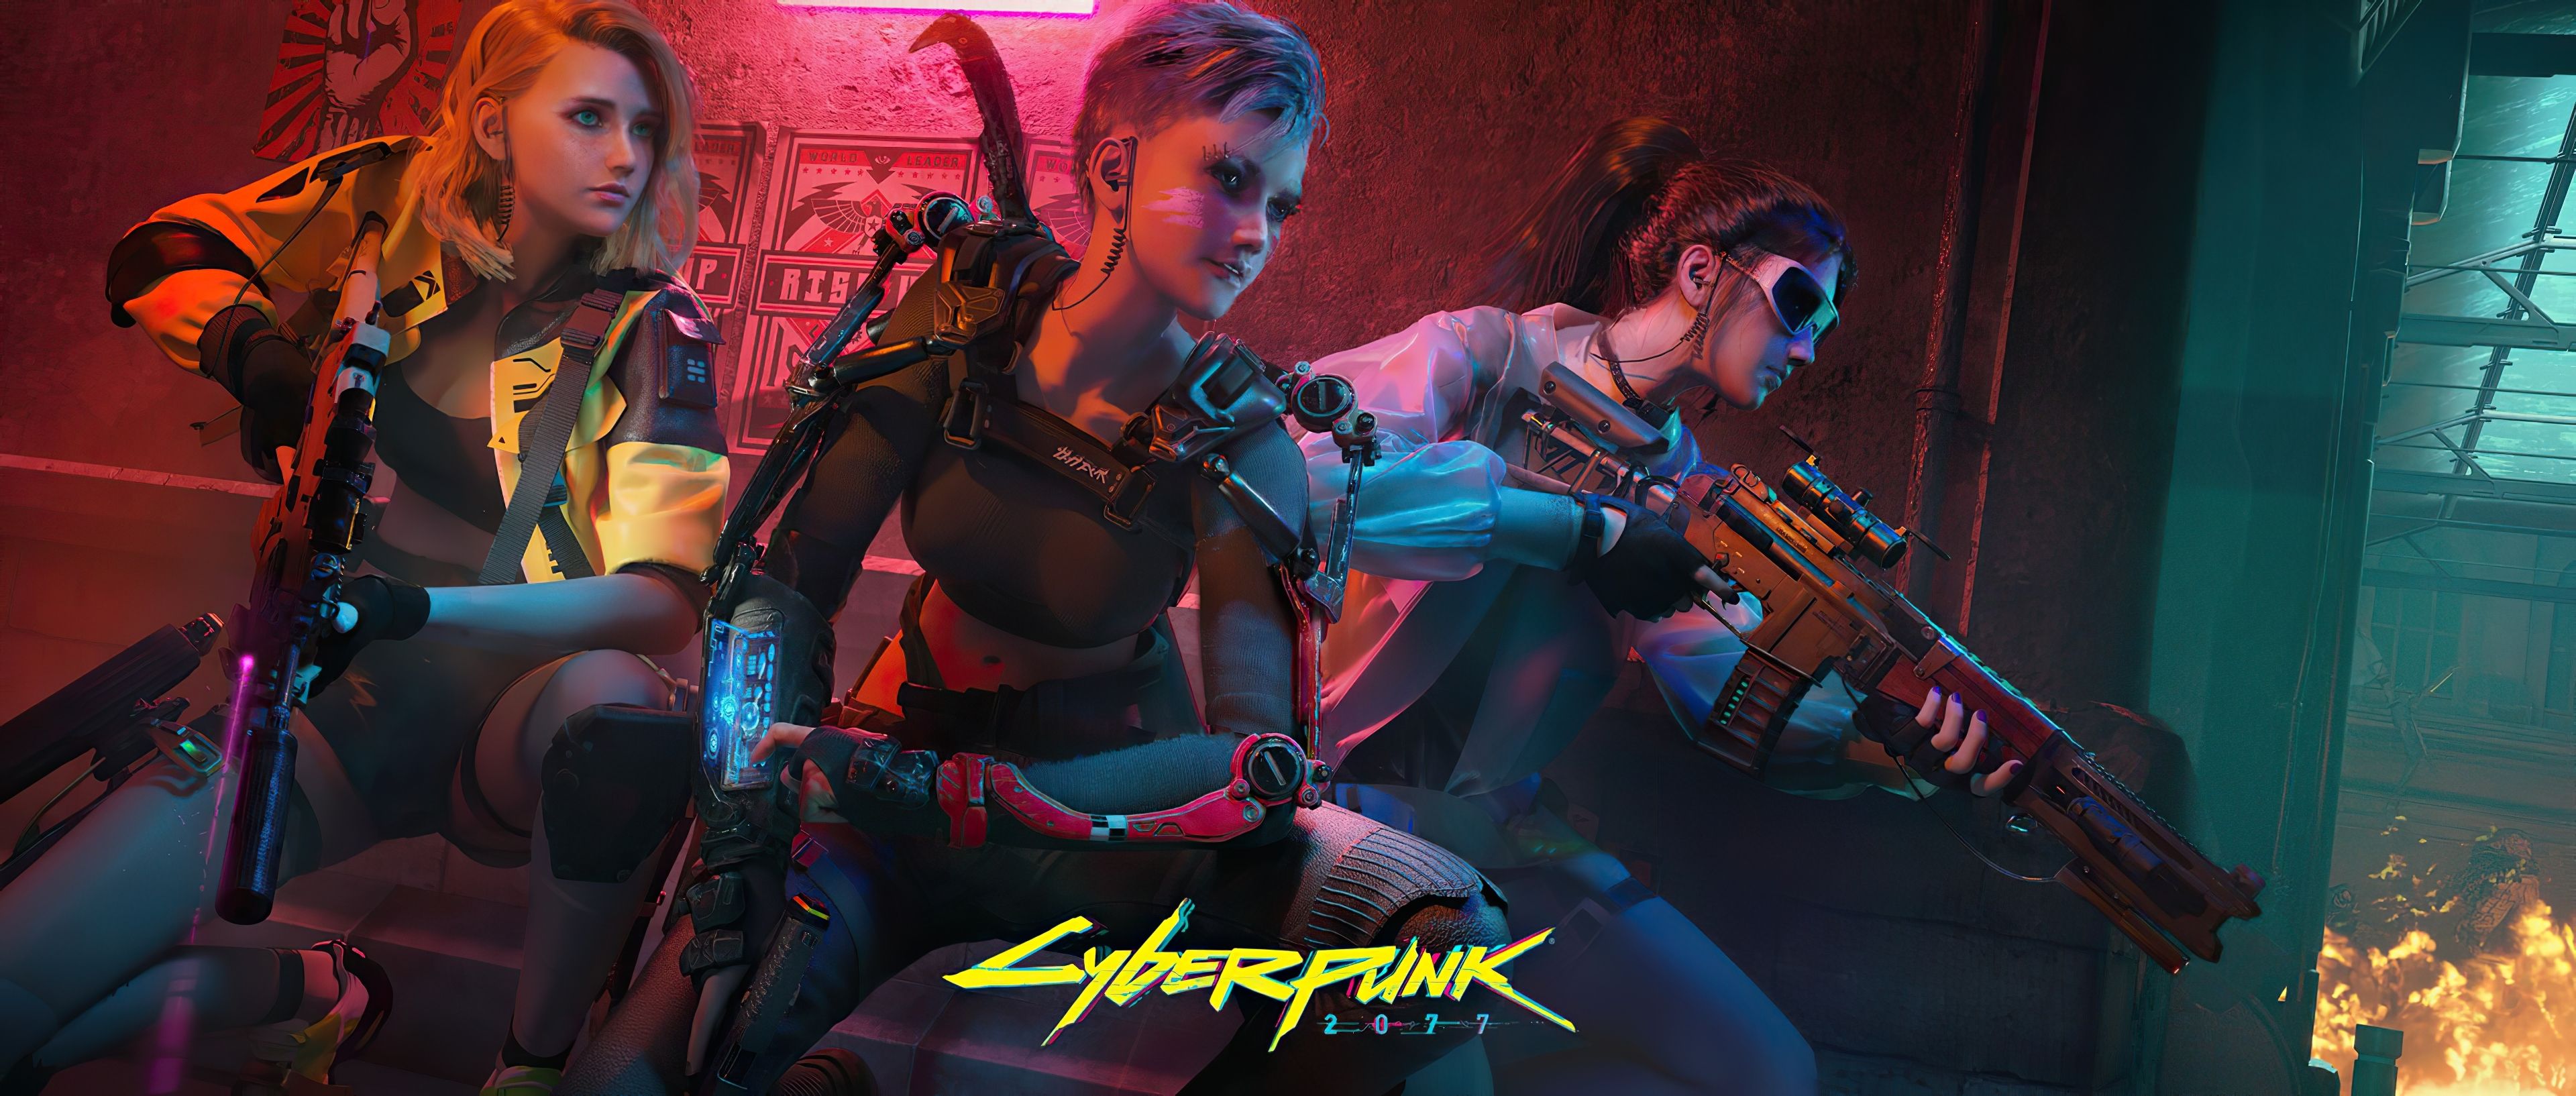 Cyberpunk 2077 Girl Team 5K .wallpaperden.com